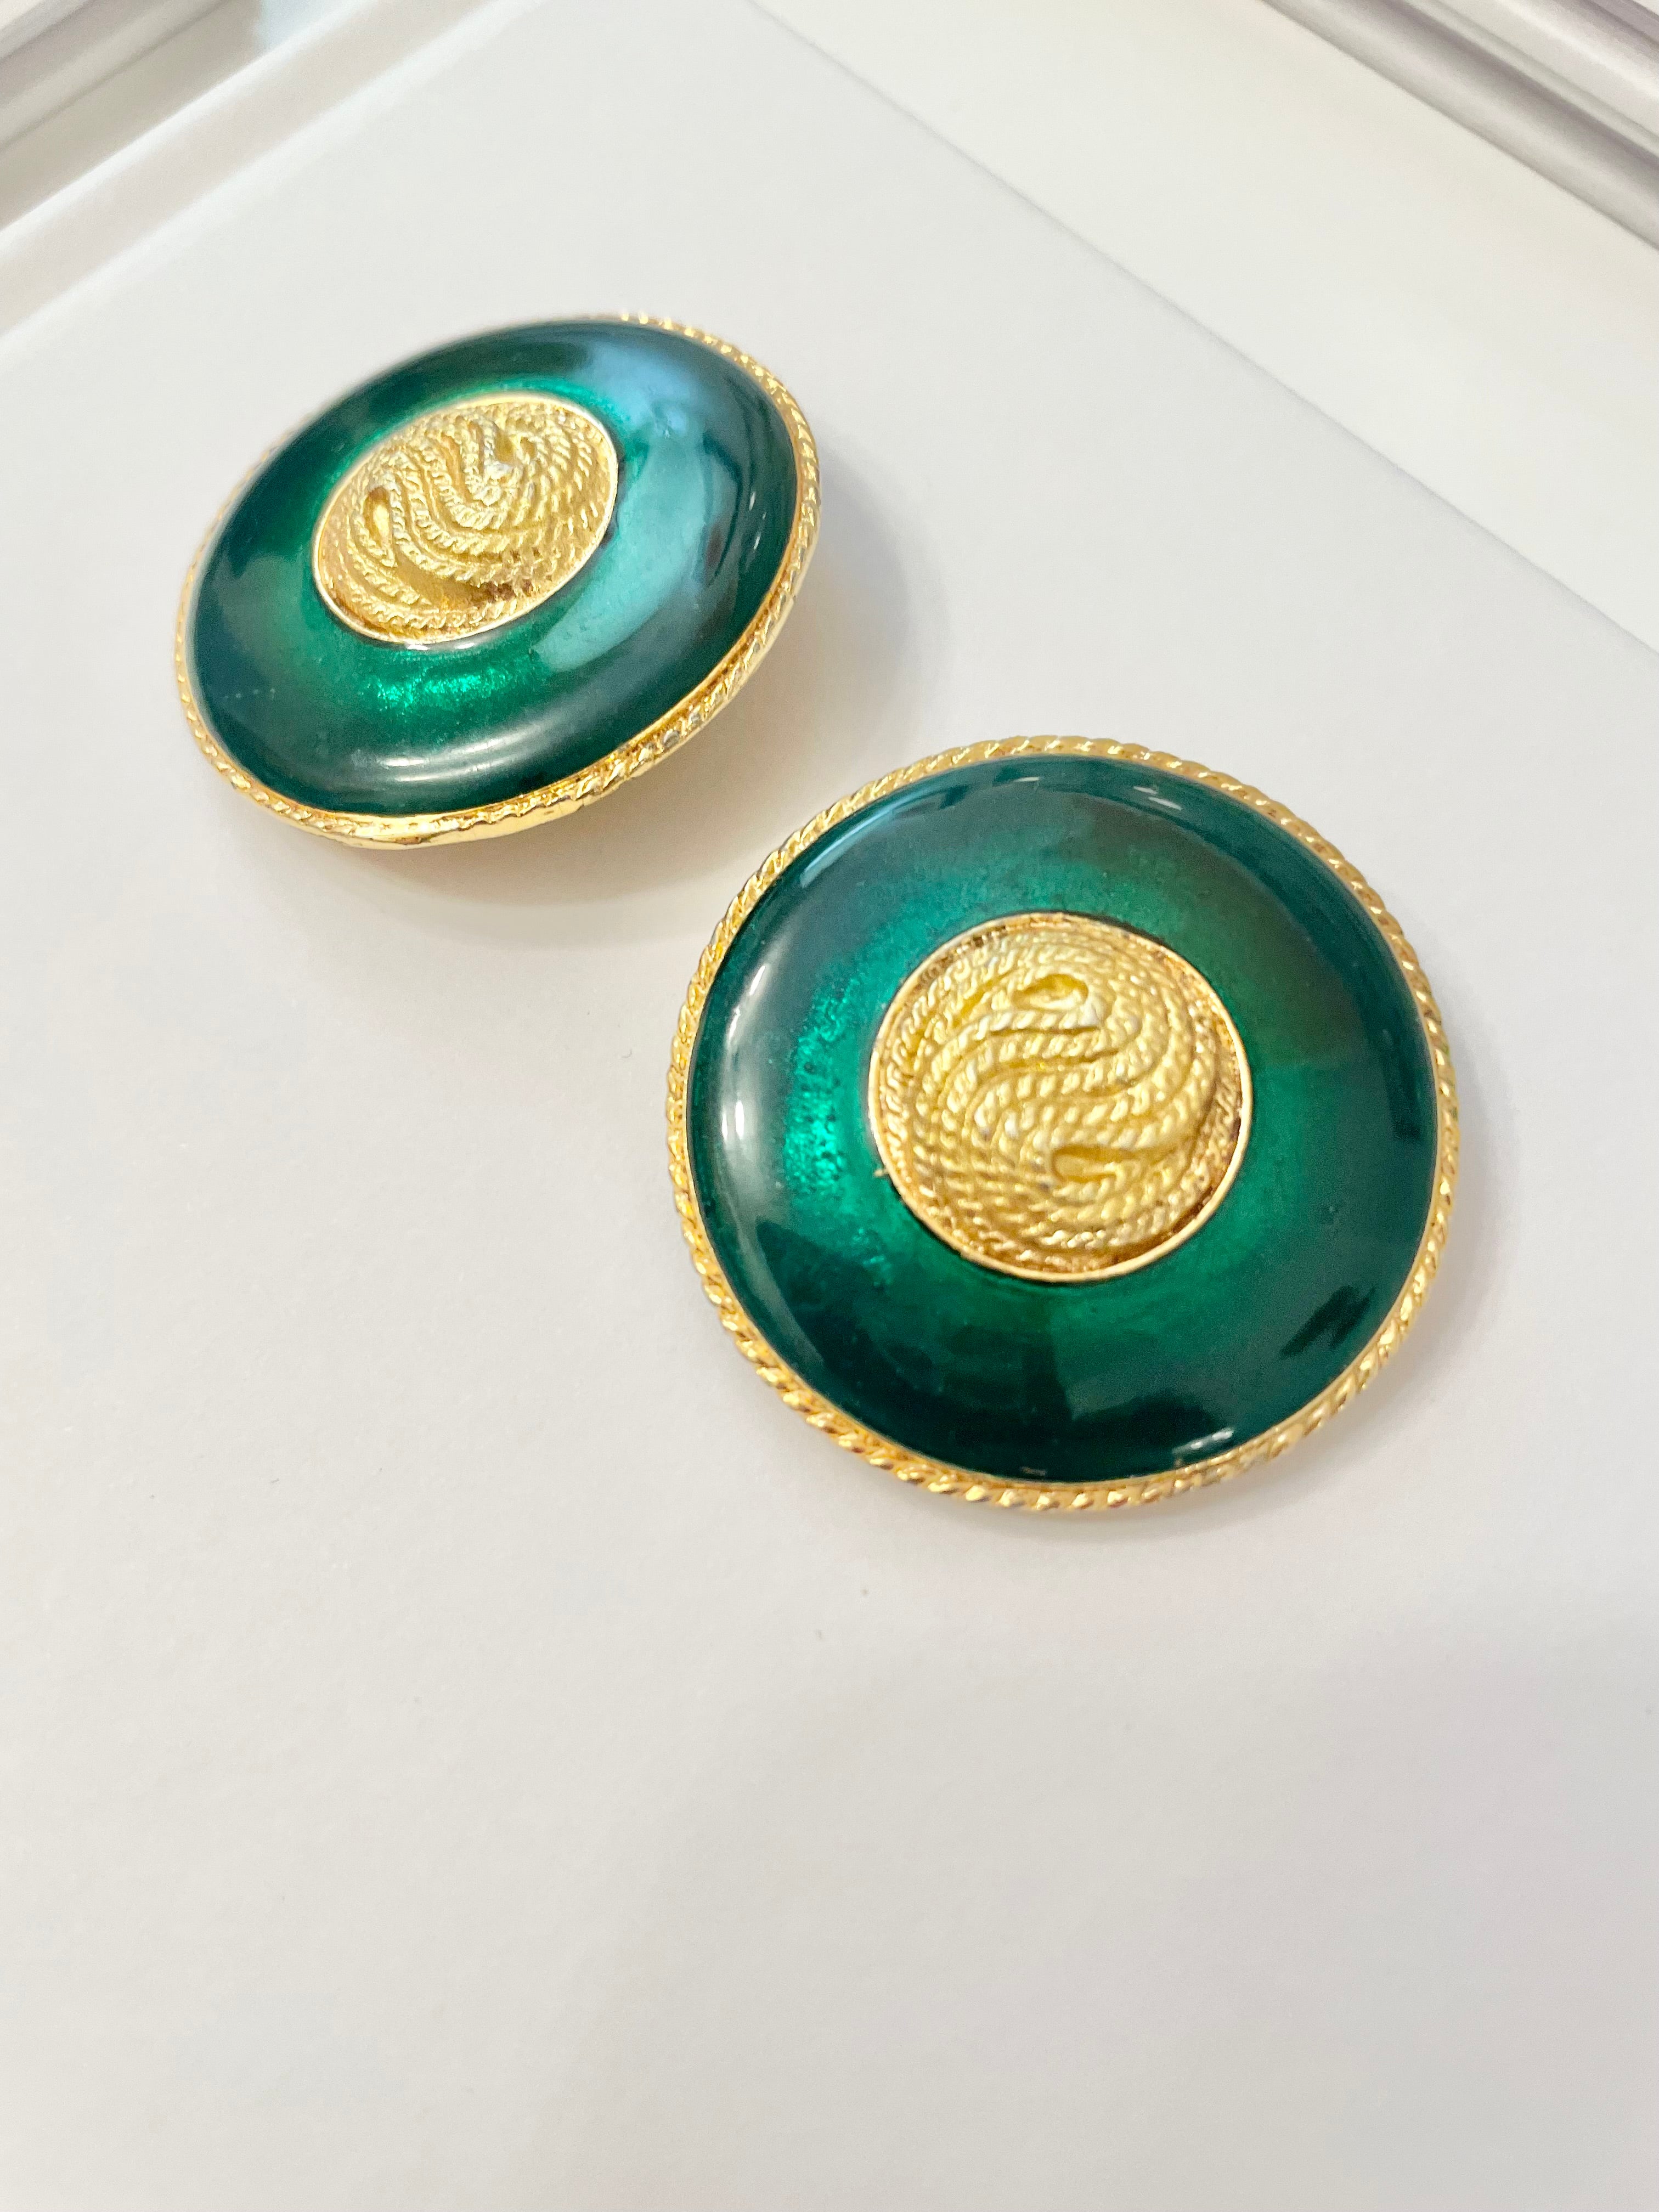 1970's truly elegant emerald enamel button earrings...So divine!